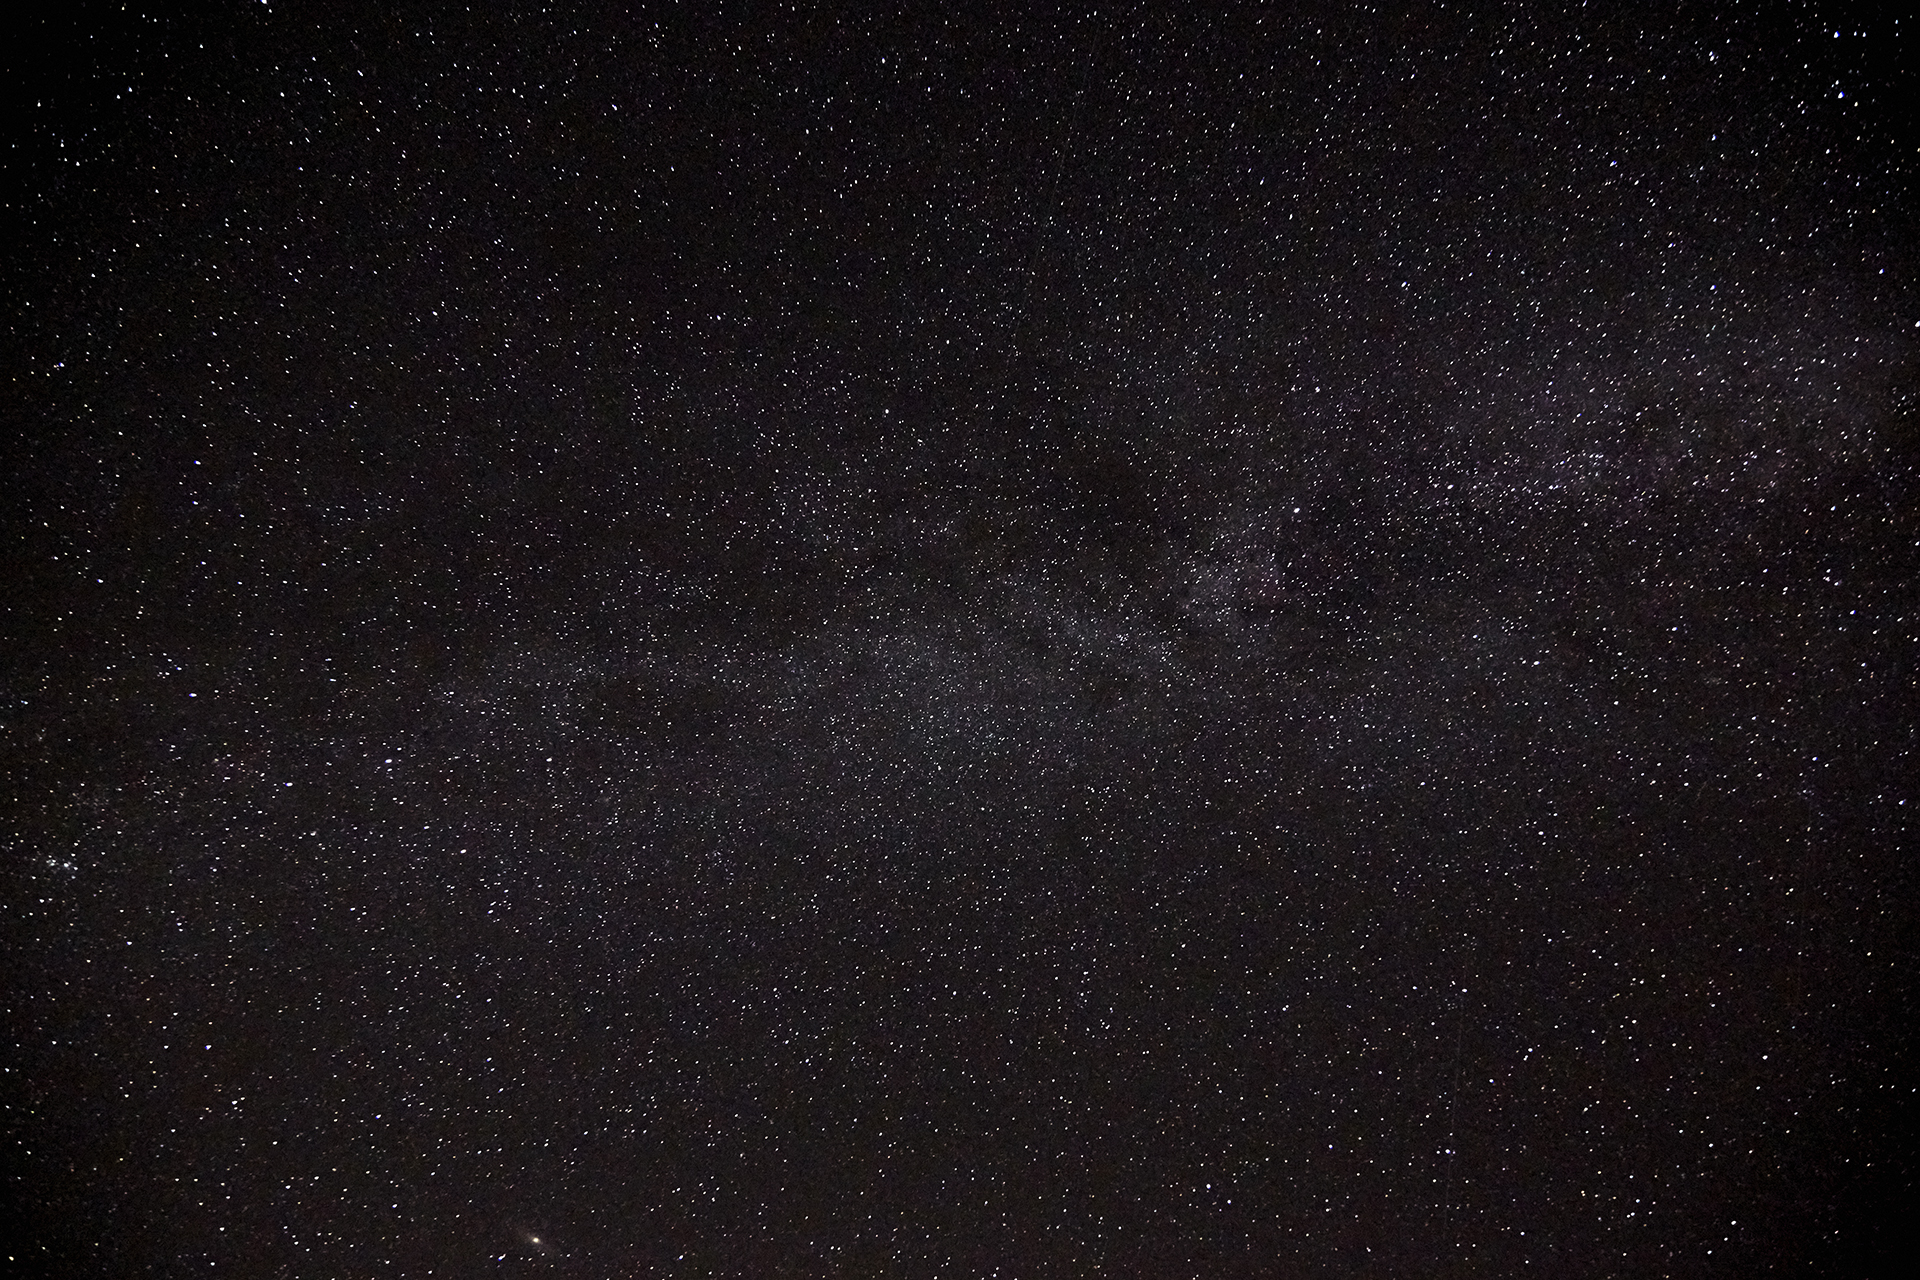 Zdjęcie Drogi Mlecznej, na którym widać również tysiące gwiazd. 